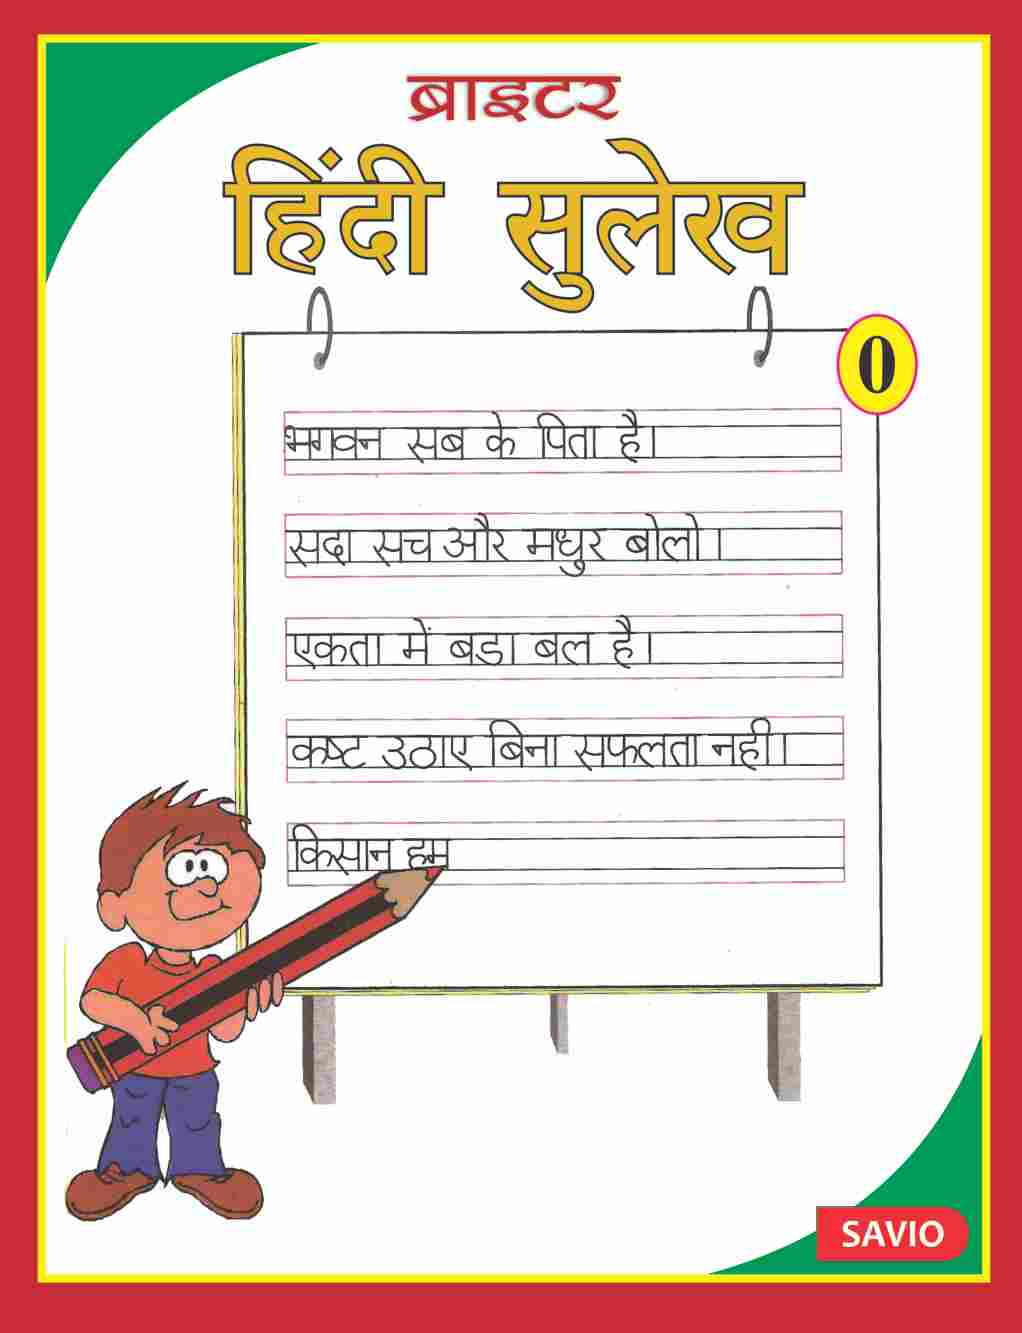 BRIGHTER HINDI SULEKH – Hindi Handwriting Series – Savio Publications